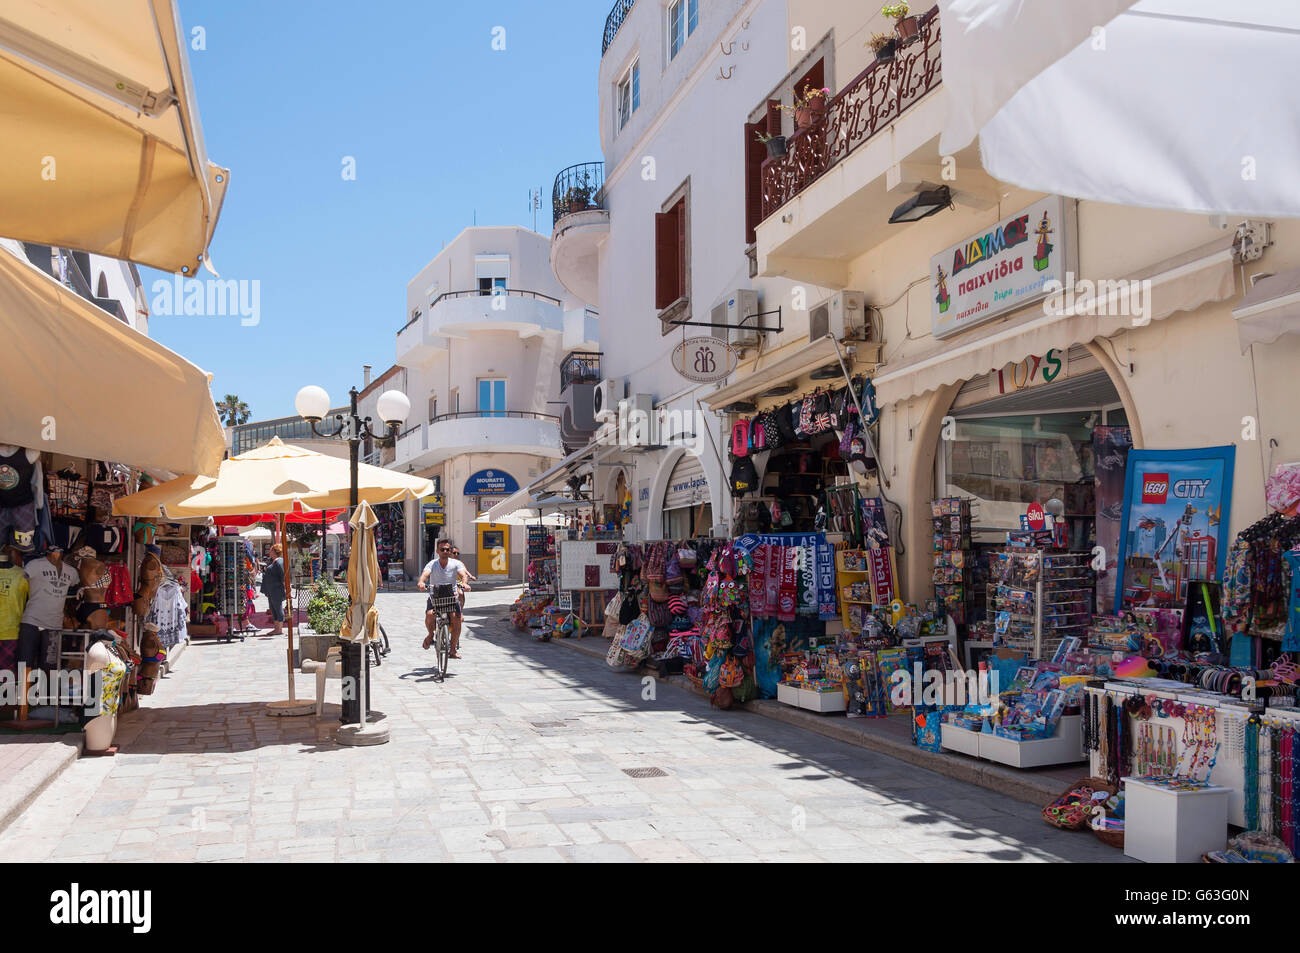 Les boutiques touristiques dans la vieille ville, la ville de Kos, Kos (Cos), du Dodécanèse, Grèce, région sud de la Mer Egée Banque D'Images